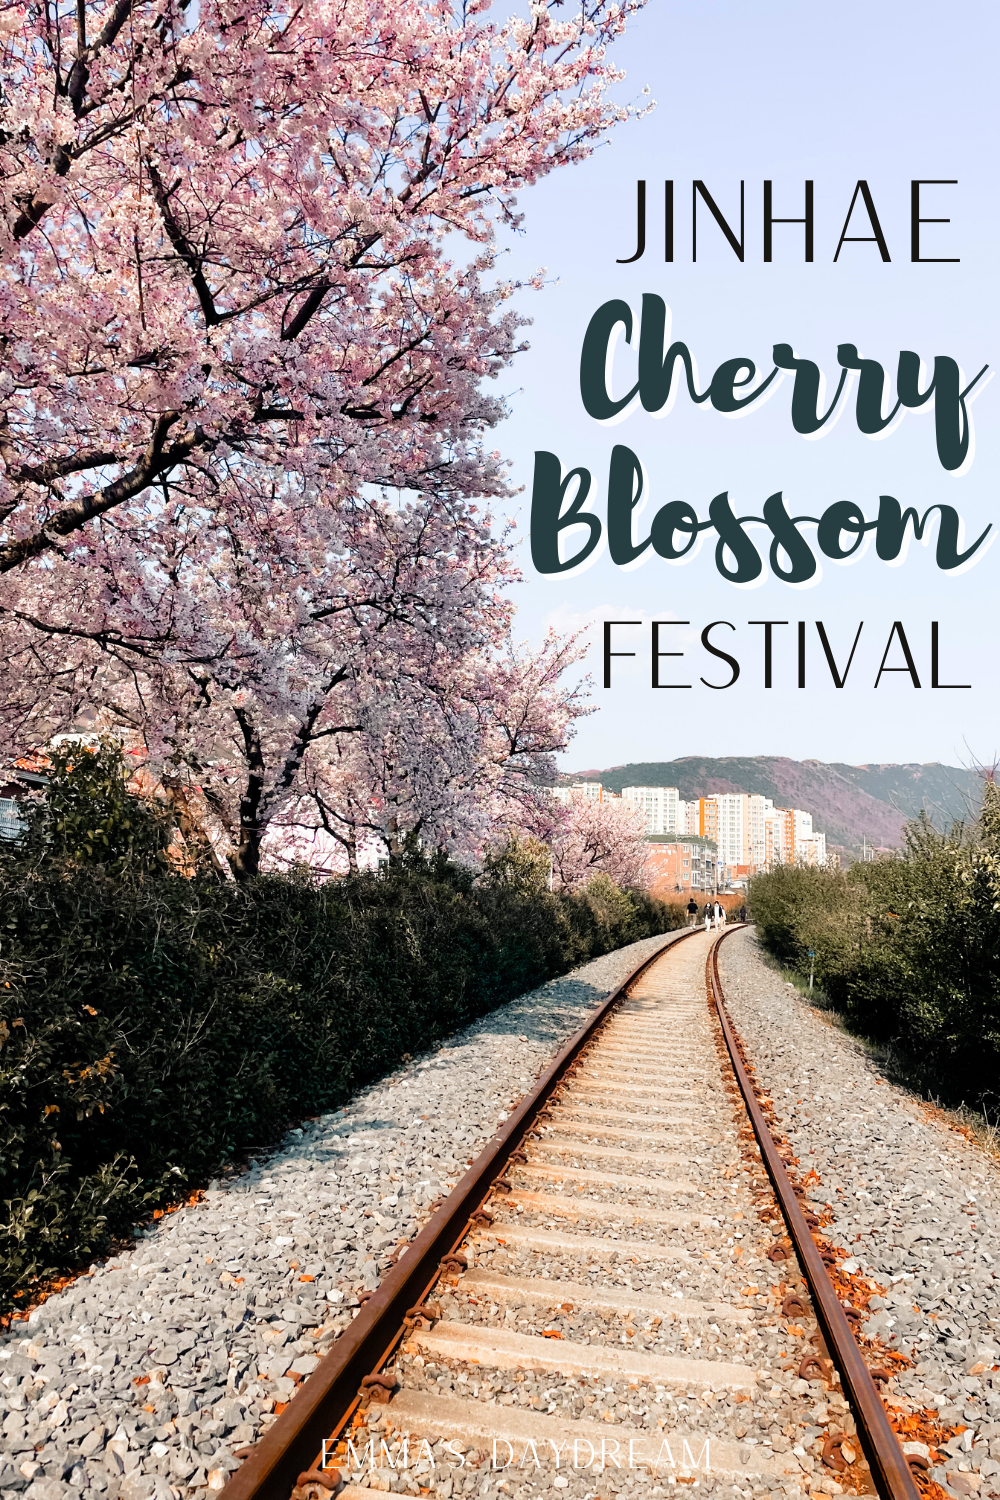 Jinhae Cherry Blossom Festival 